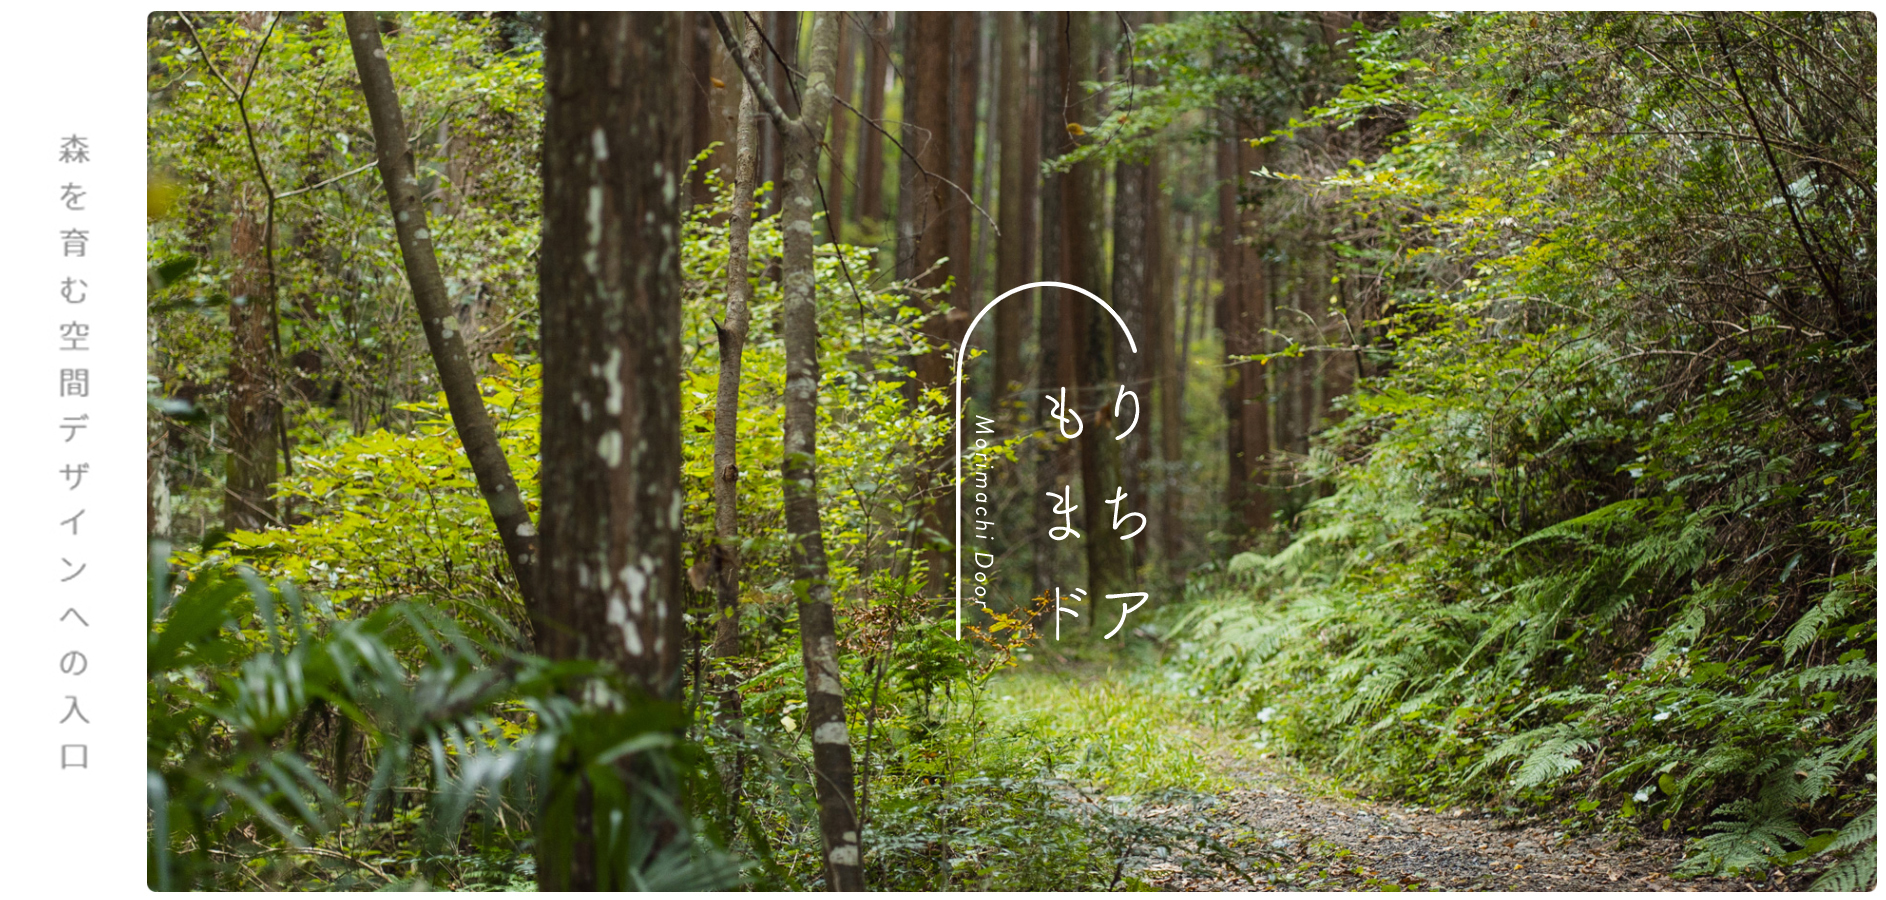 森を育む共同創造への入口 「もりまちドア」プロジェクト